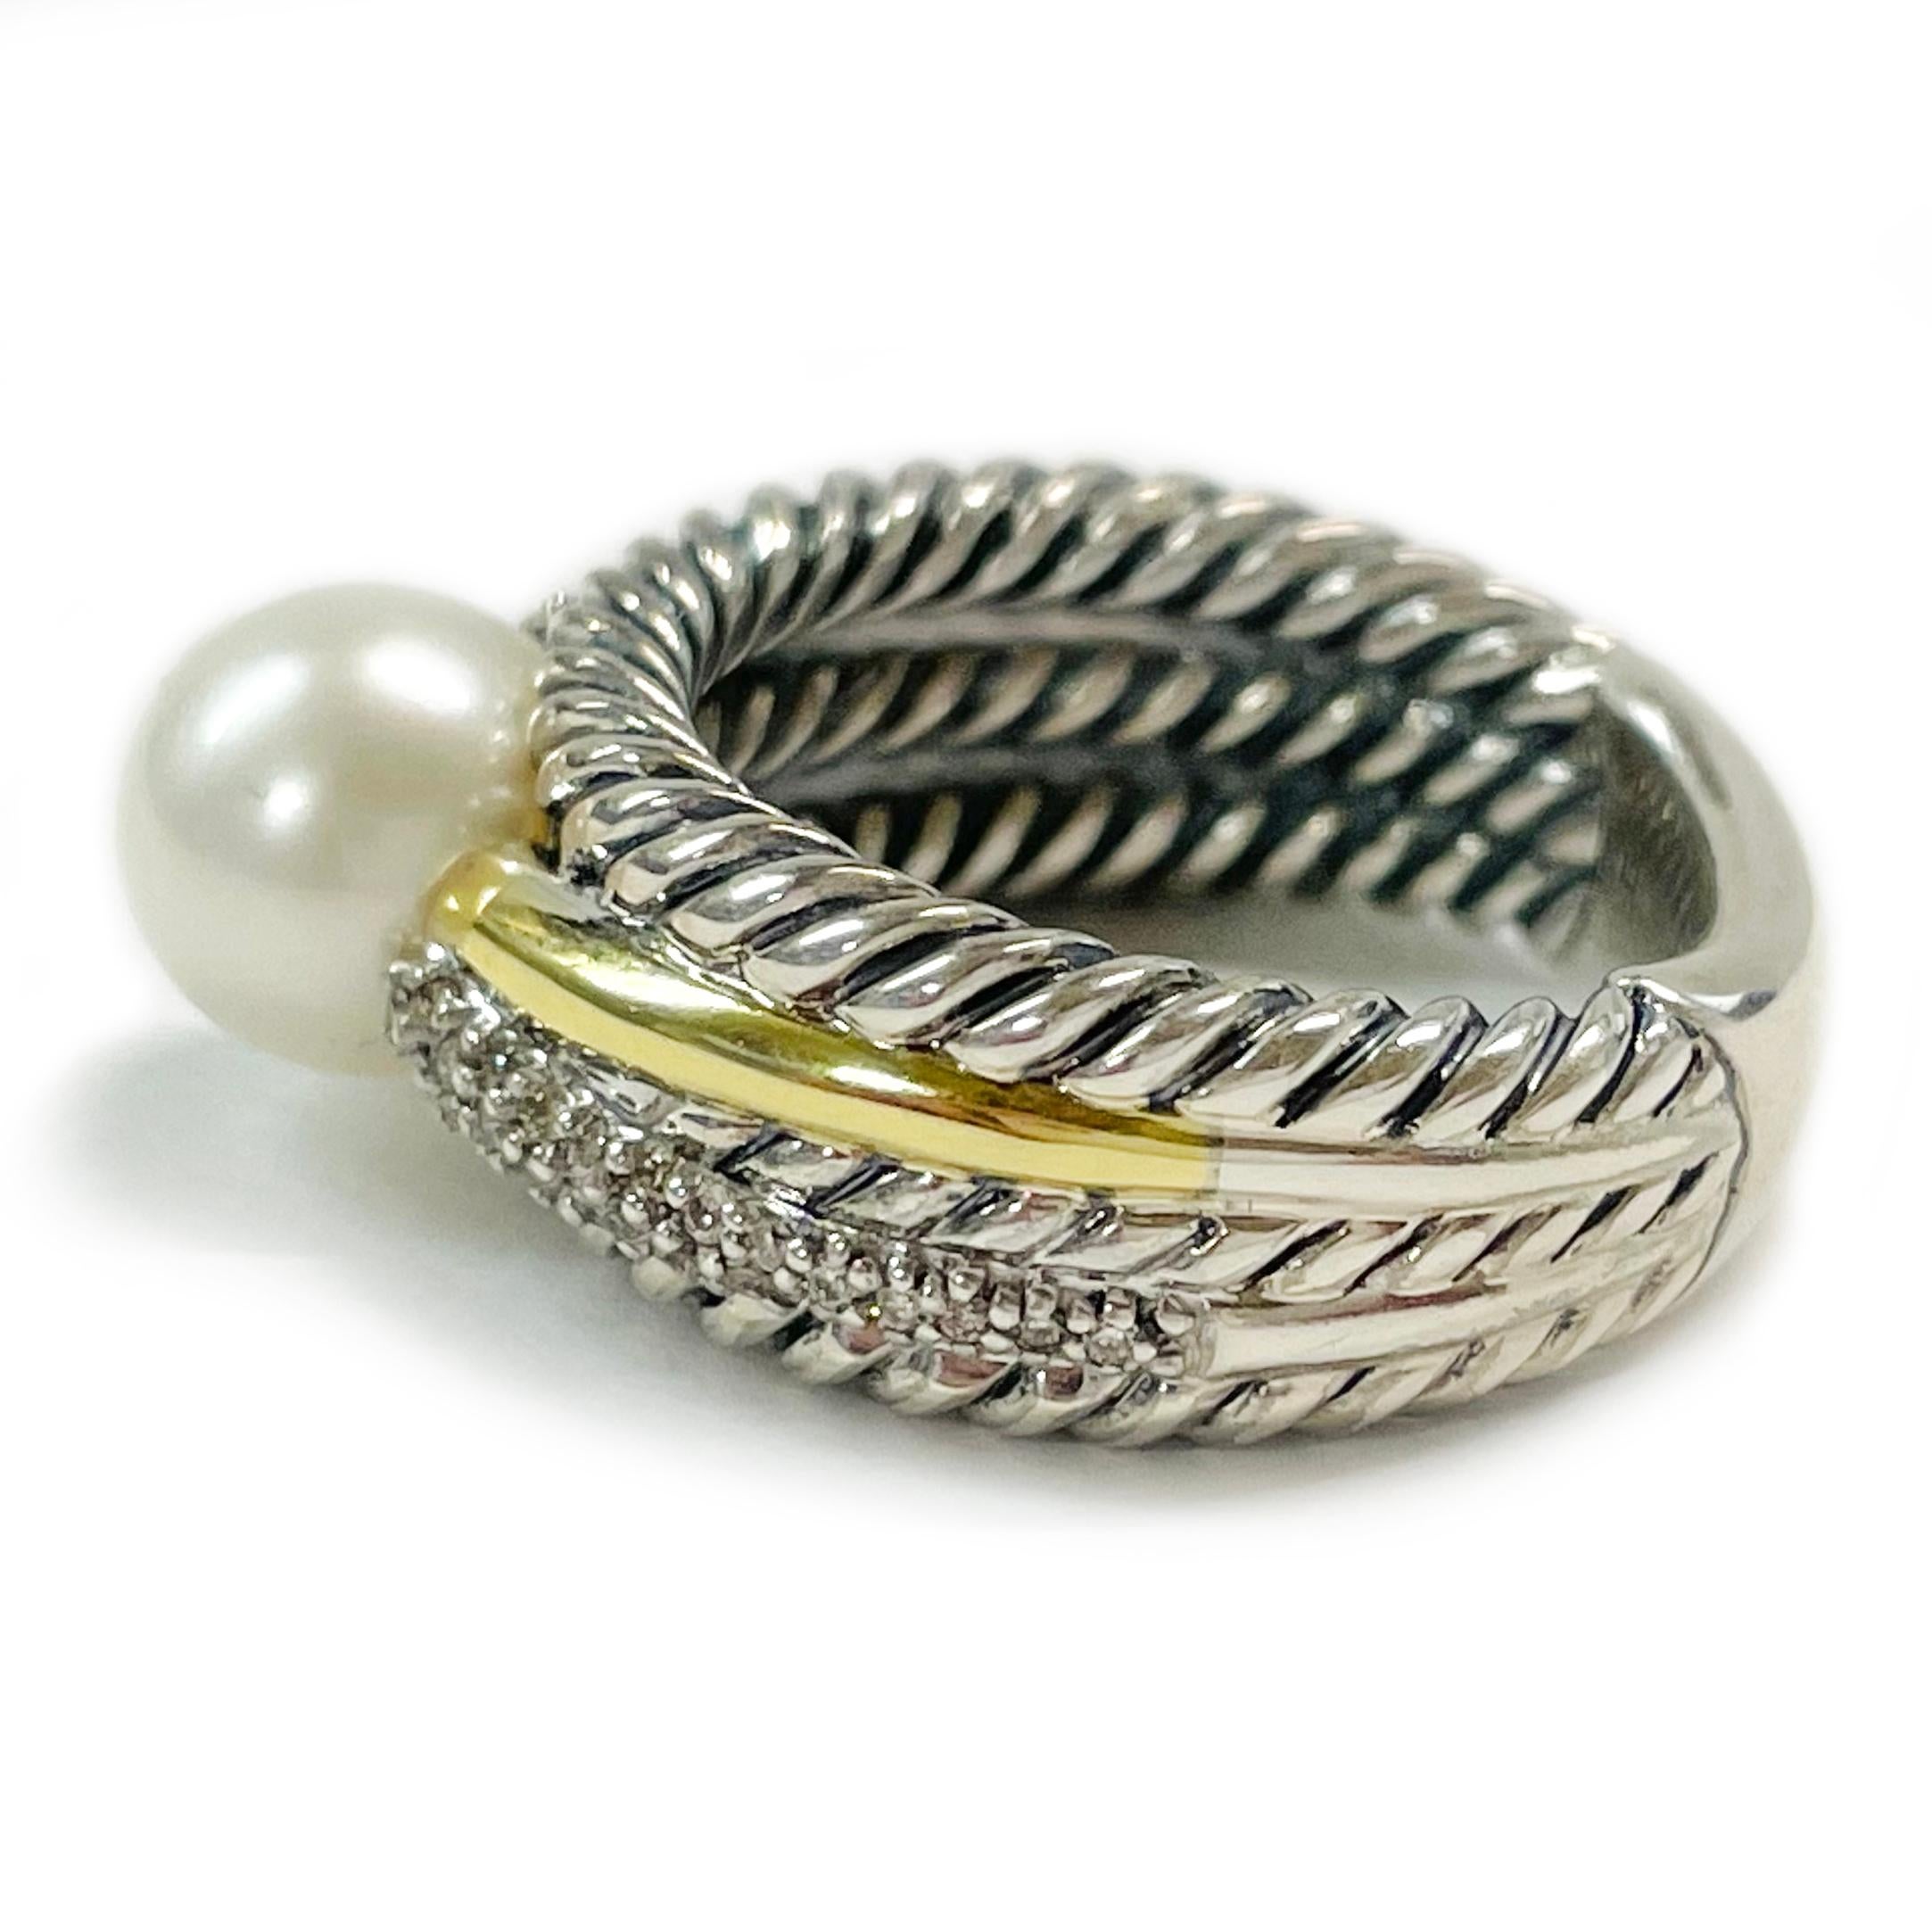 David Yurman Bague bicolore perle diamant. Cette jolie bague présente le classique design Yurman en forme de câble avec un élément en or jaune 18 carats lisse et brillant, trente-quatre diamants en relief et, au centre de la bague, une jolie perle